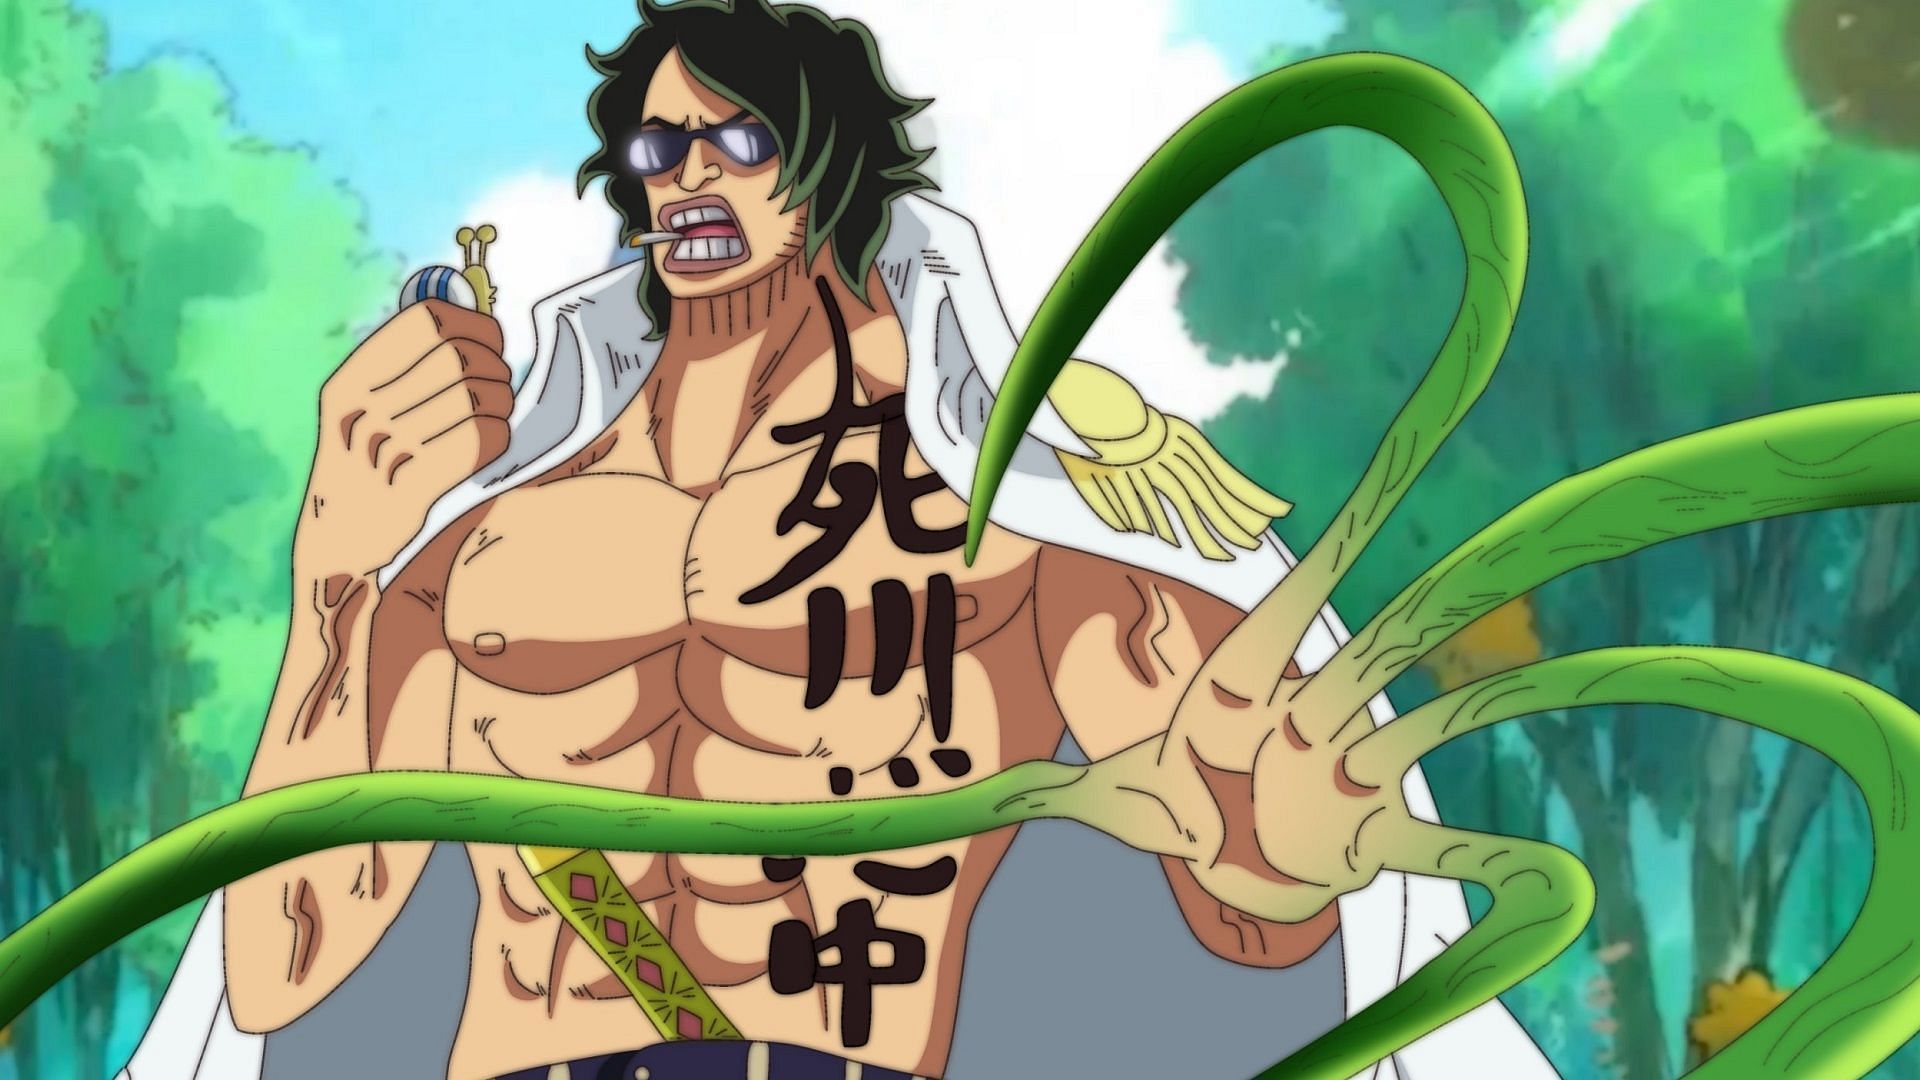 Ryogyoku (Image via Toei Animation, One Piece)